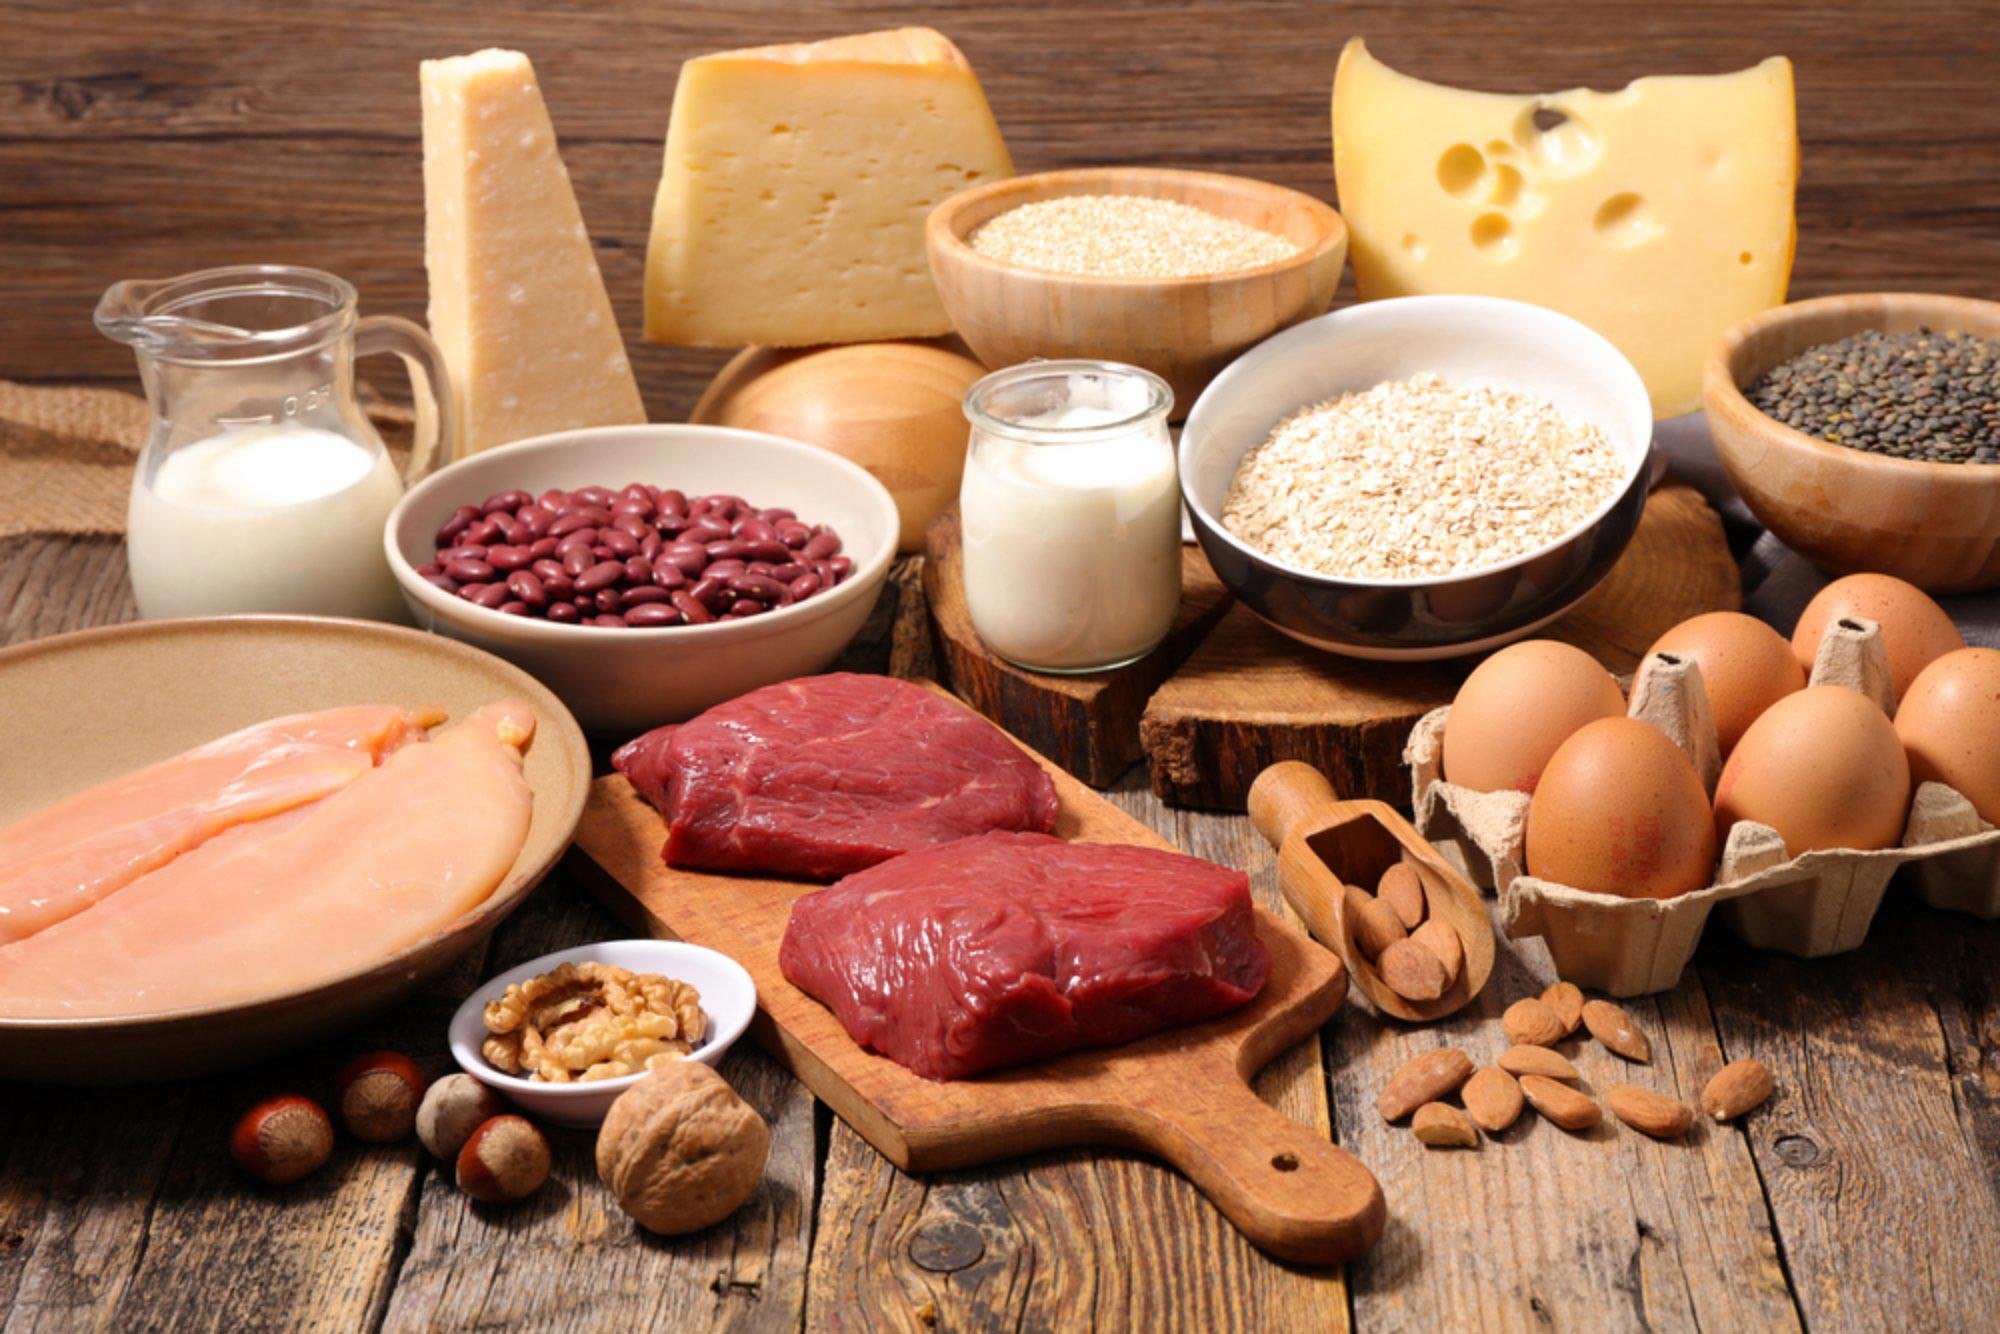 На малюнку зображено сире м'ясо, молоко, сир, яйця і інші харчові продукти